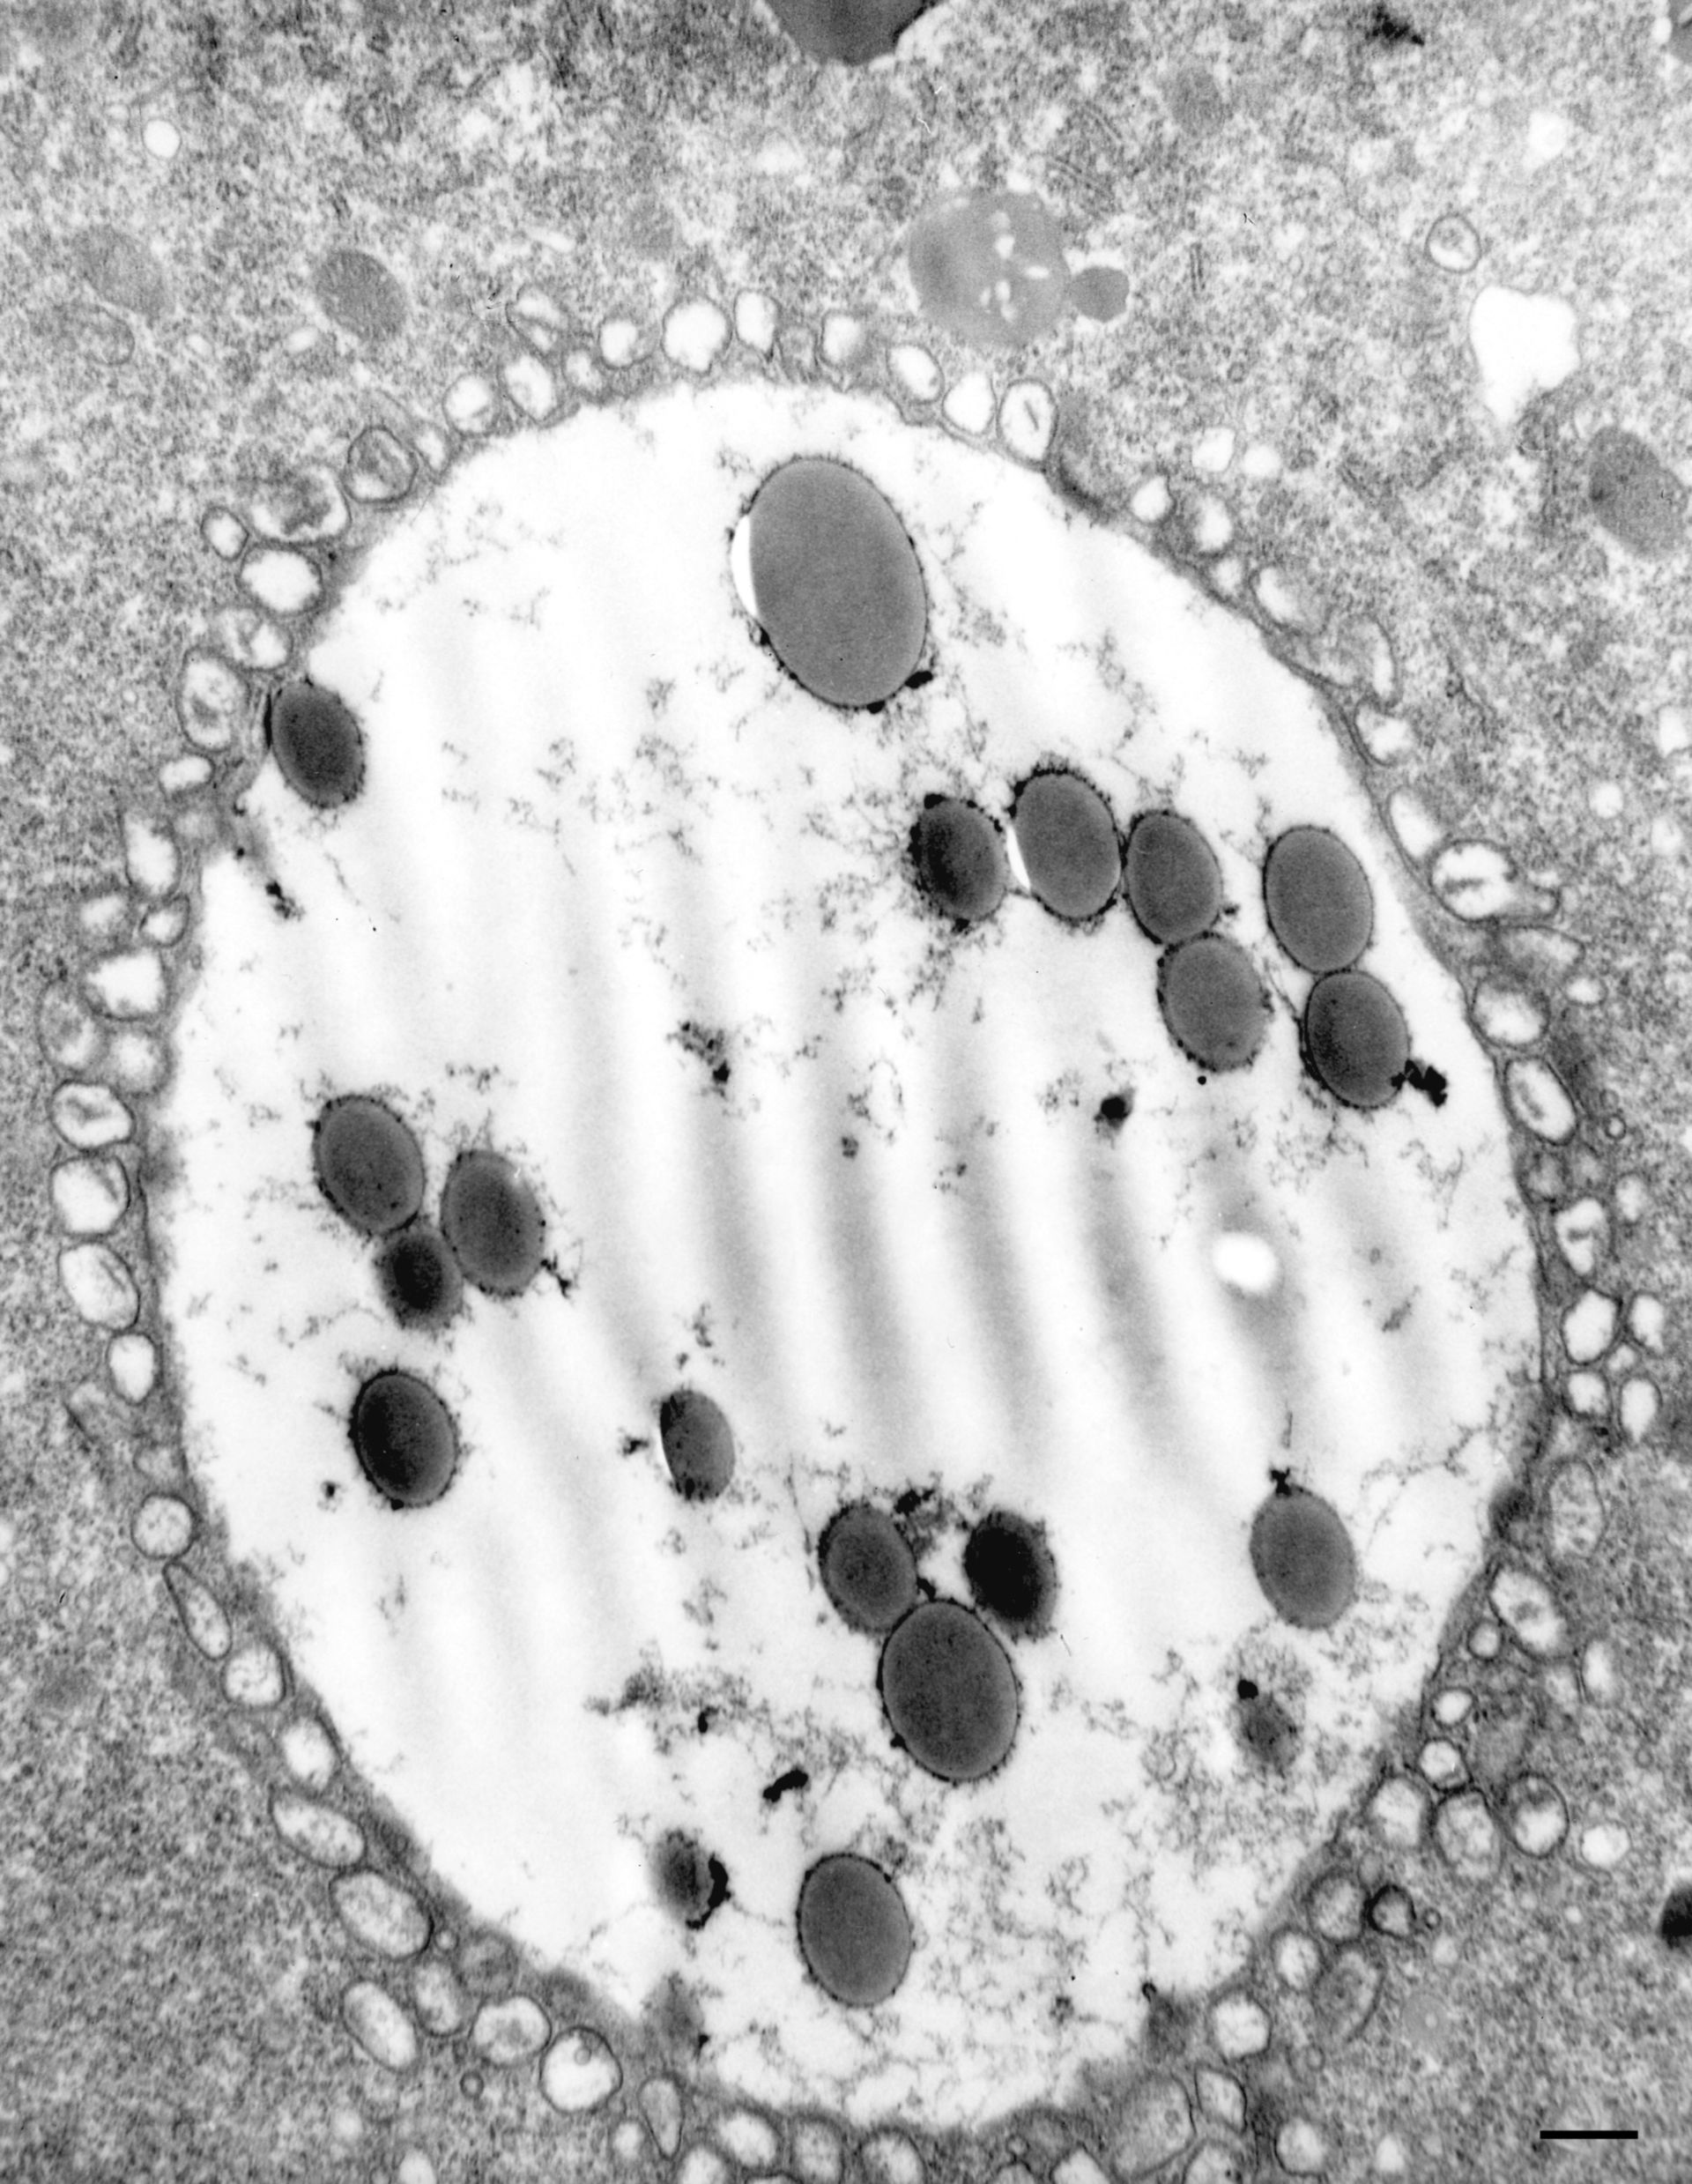 Paramecium multimicronucleatum (Secondary lysosome) - CIL:36736